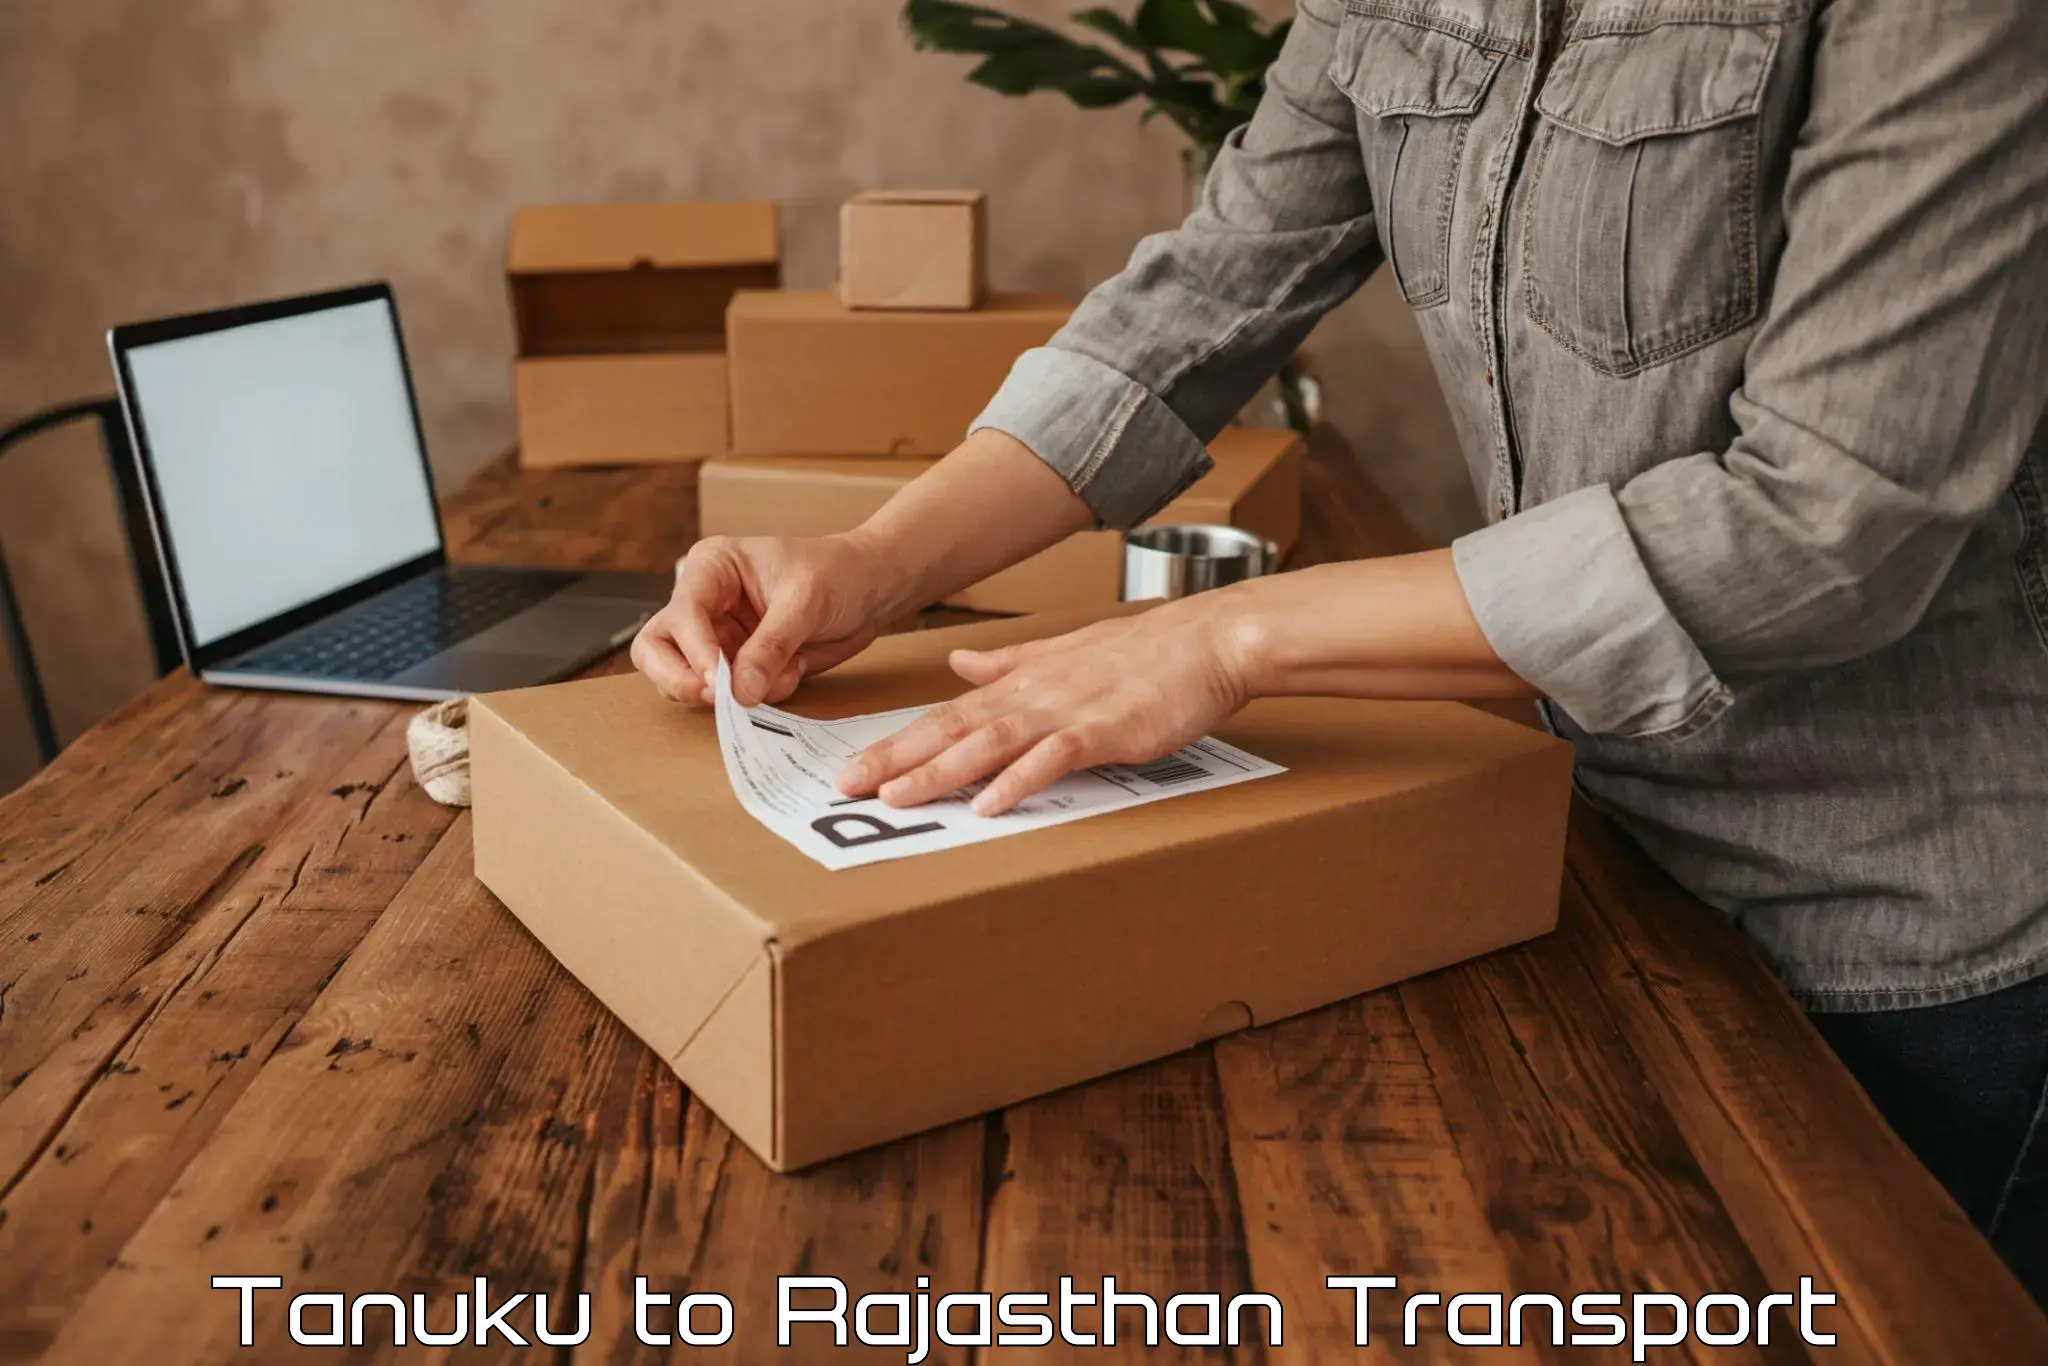 Transport in sharing Tanuku to Reengus